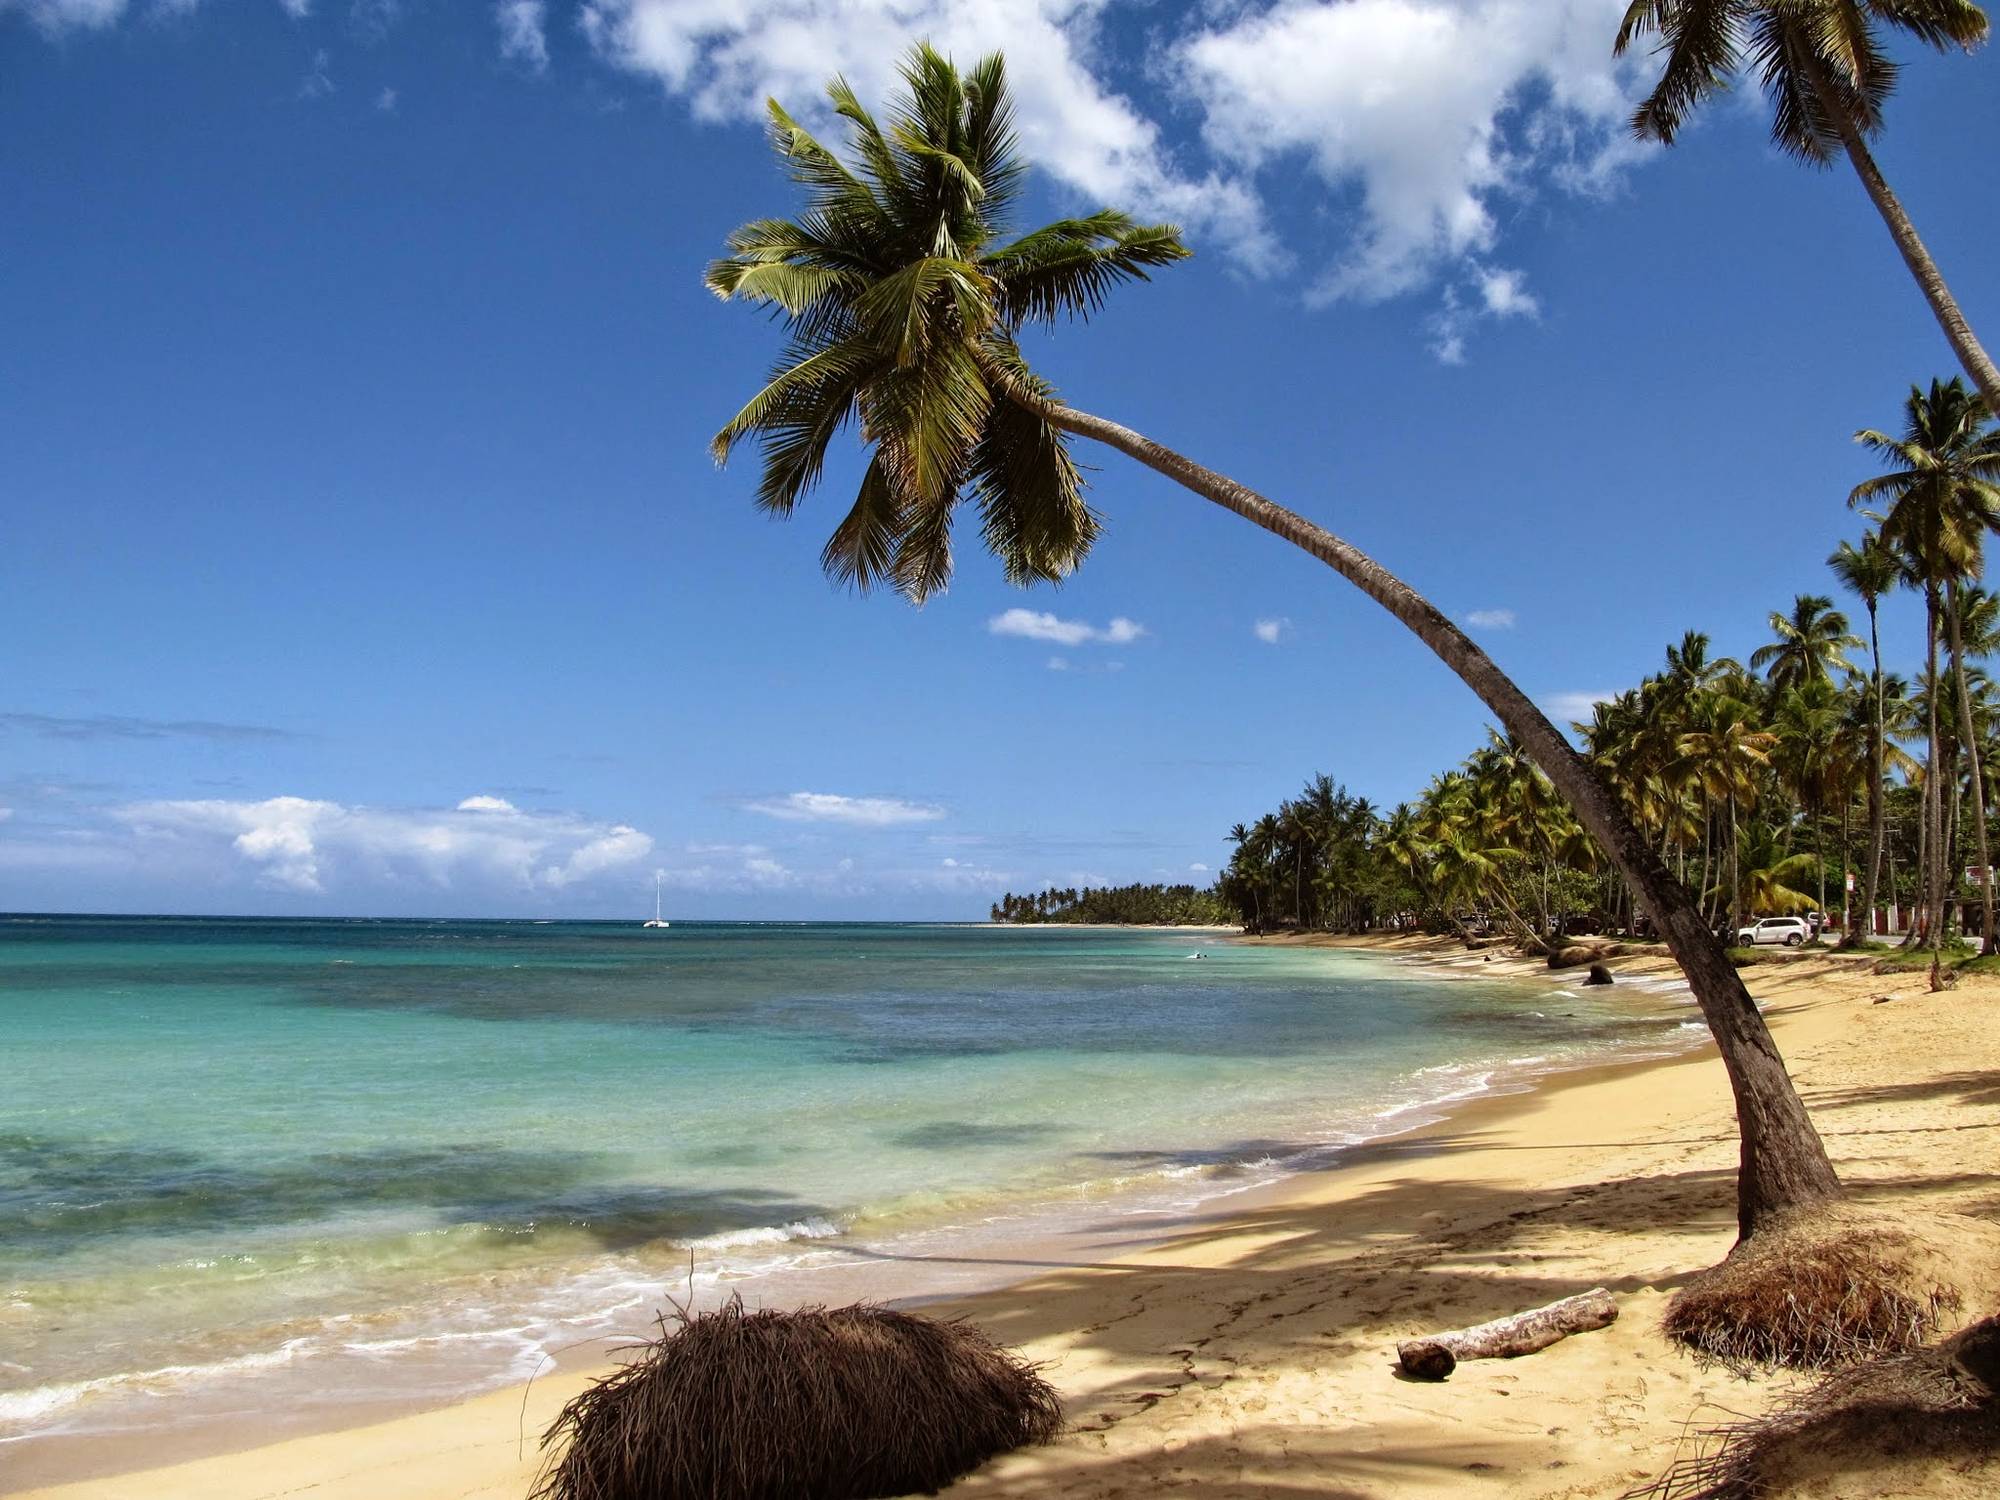 Plaża w Las Terrenas - jedna z dwóch najładniejszych plaż na Dominikanie jakie odwiedziłem.